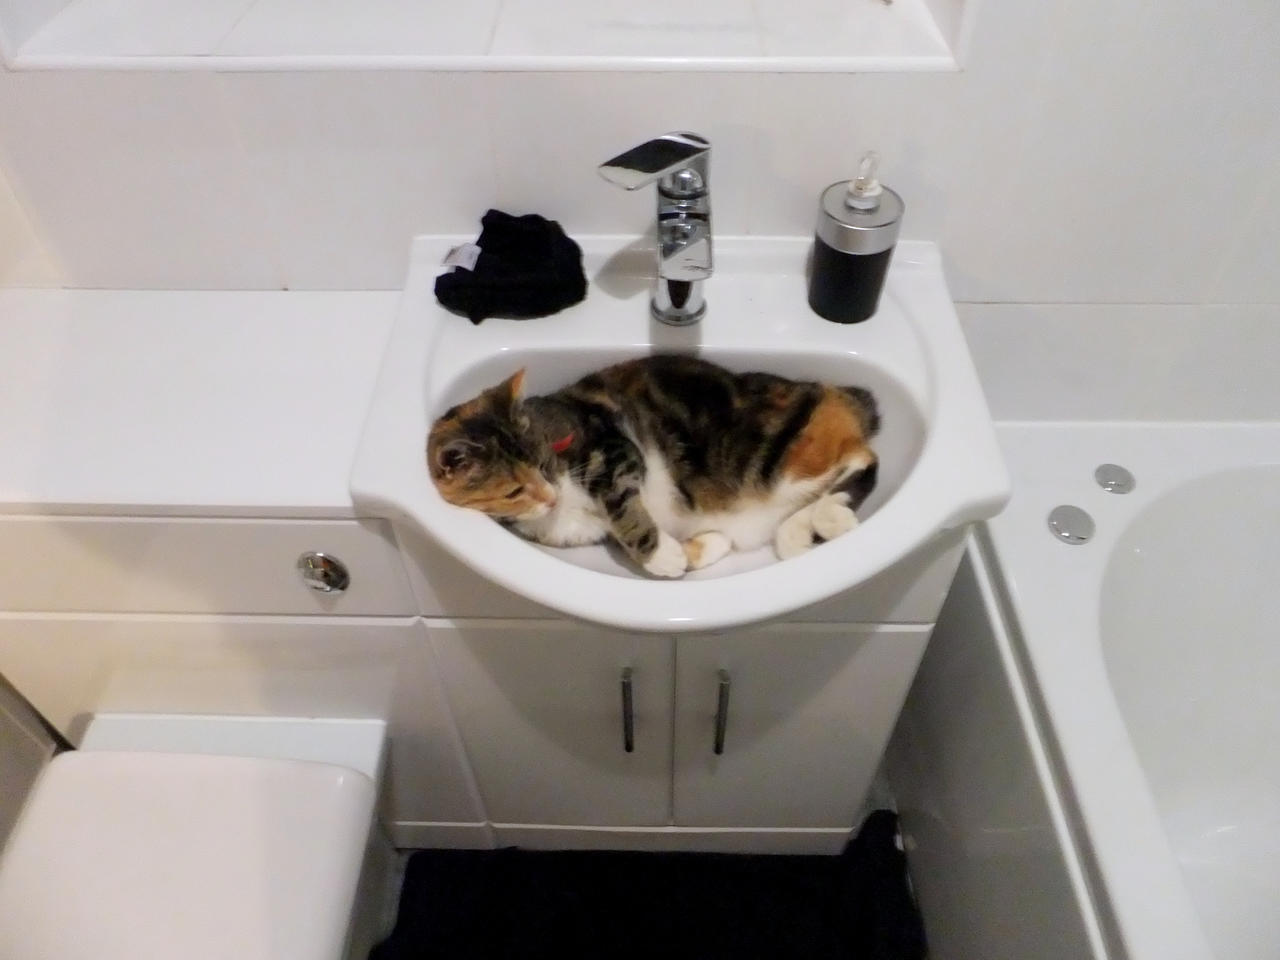 My Cat Sleeping In A Sink